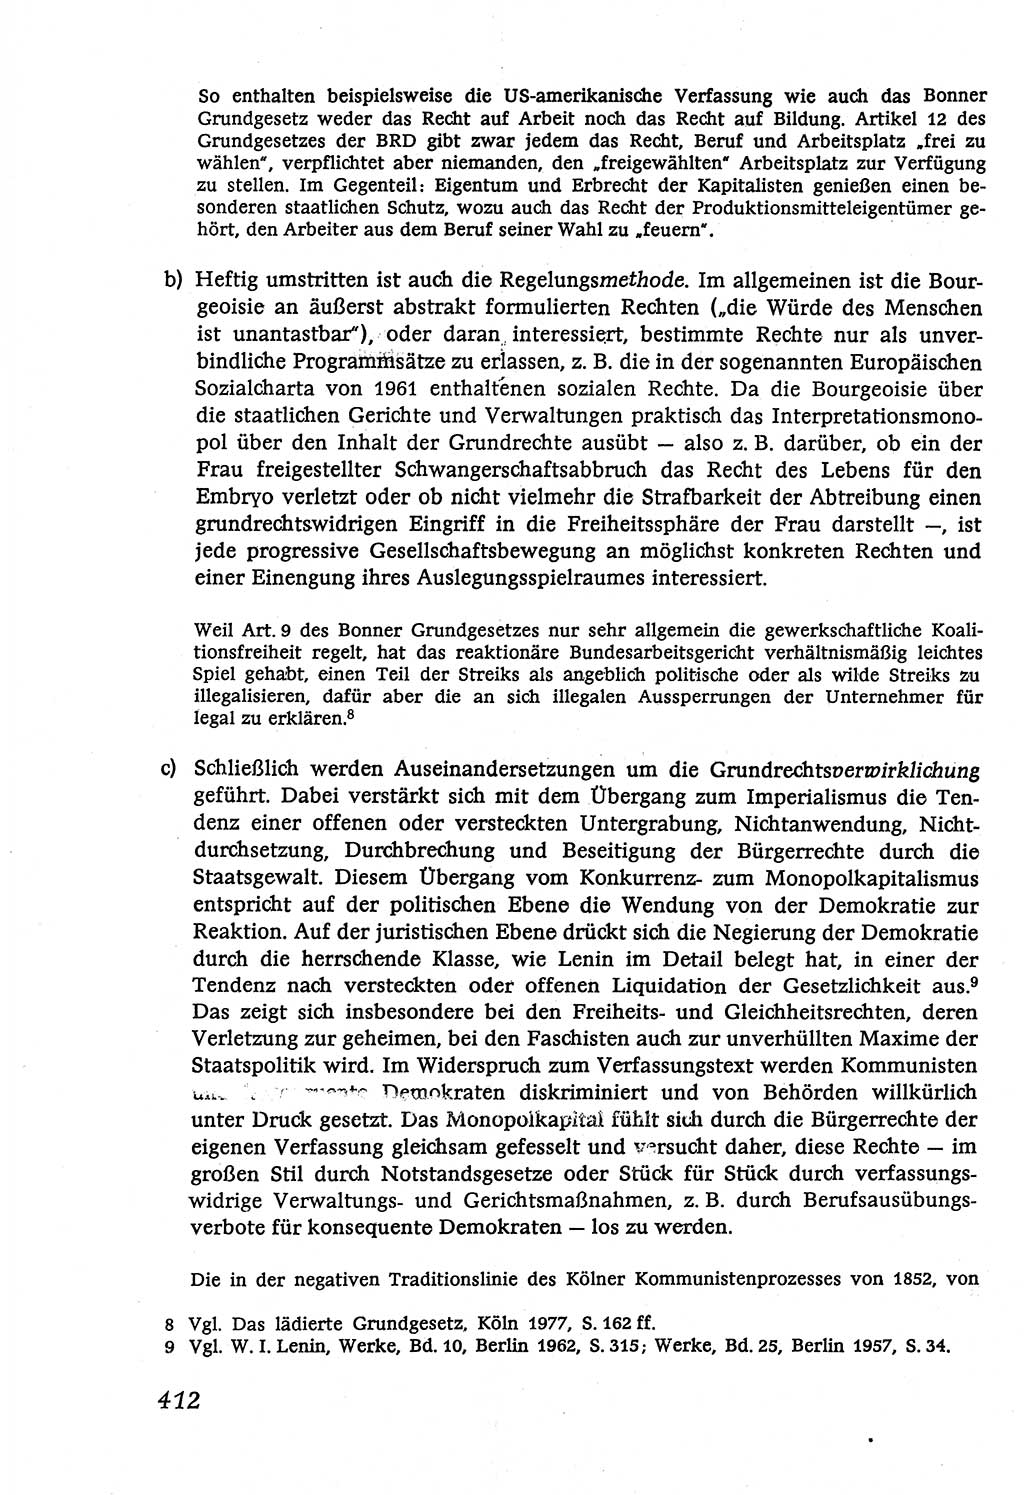 Marxistisch-leninistische (ML) Staats- und Rechtstheorie [Deutsche Demokratische Republik (DDR)], Lehrbuch 1980, Seite 412 (ML St.-R.-Th. DDR Lb. 1980, S. 412)